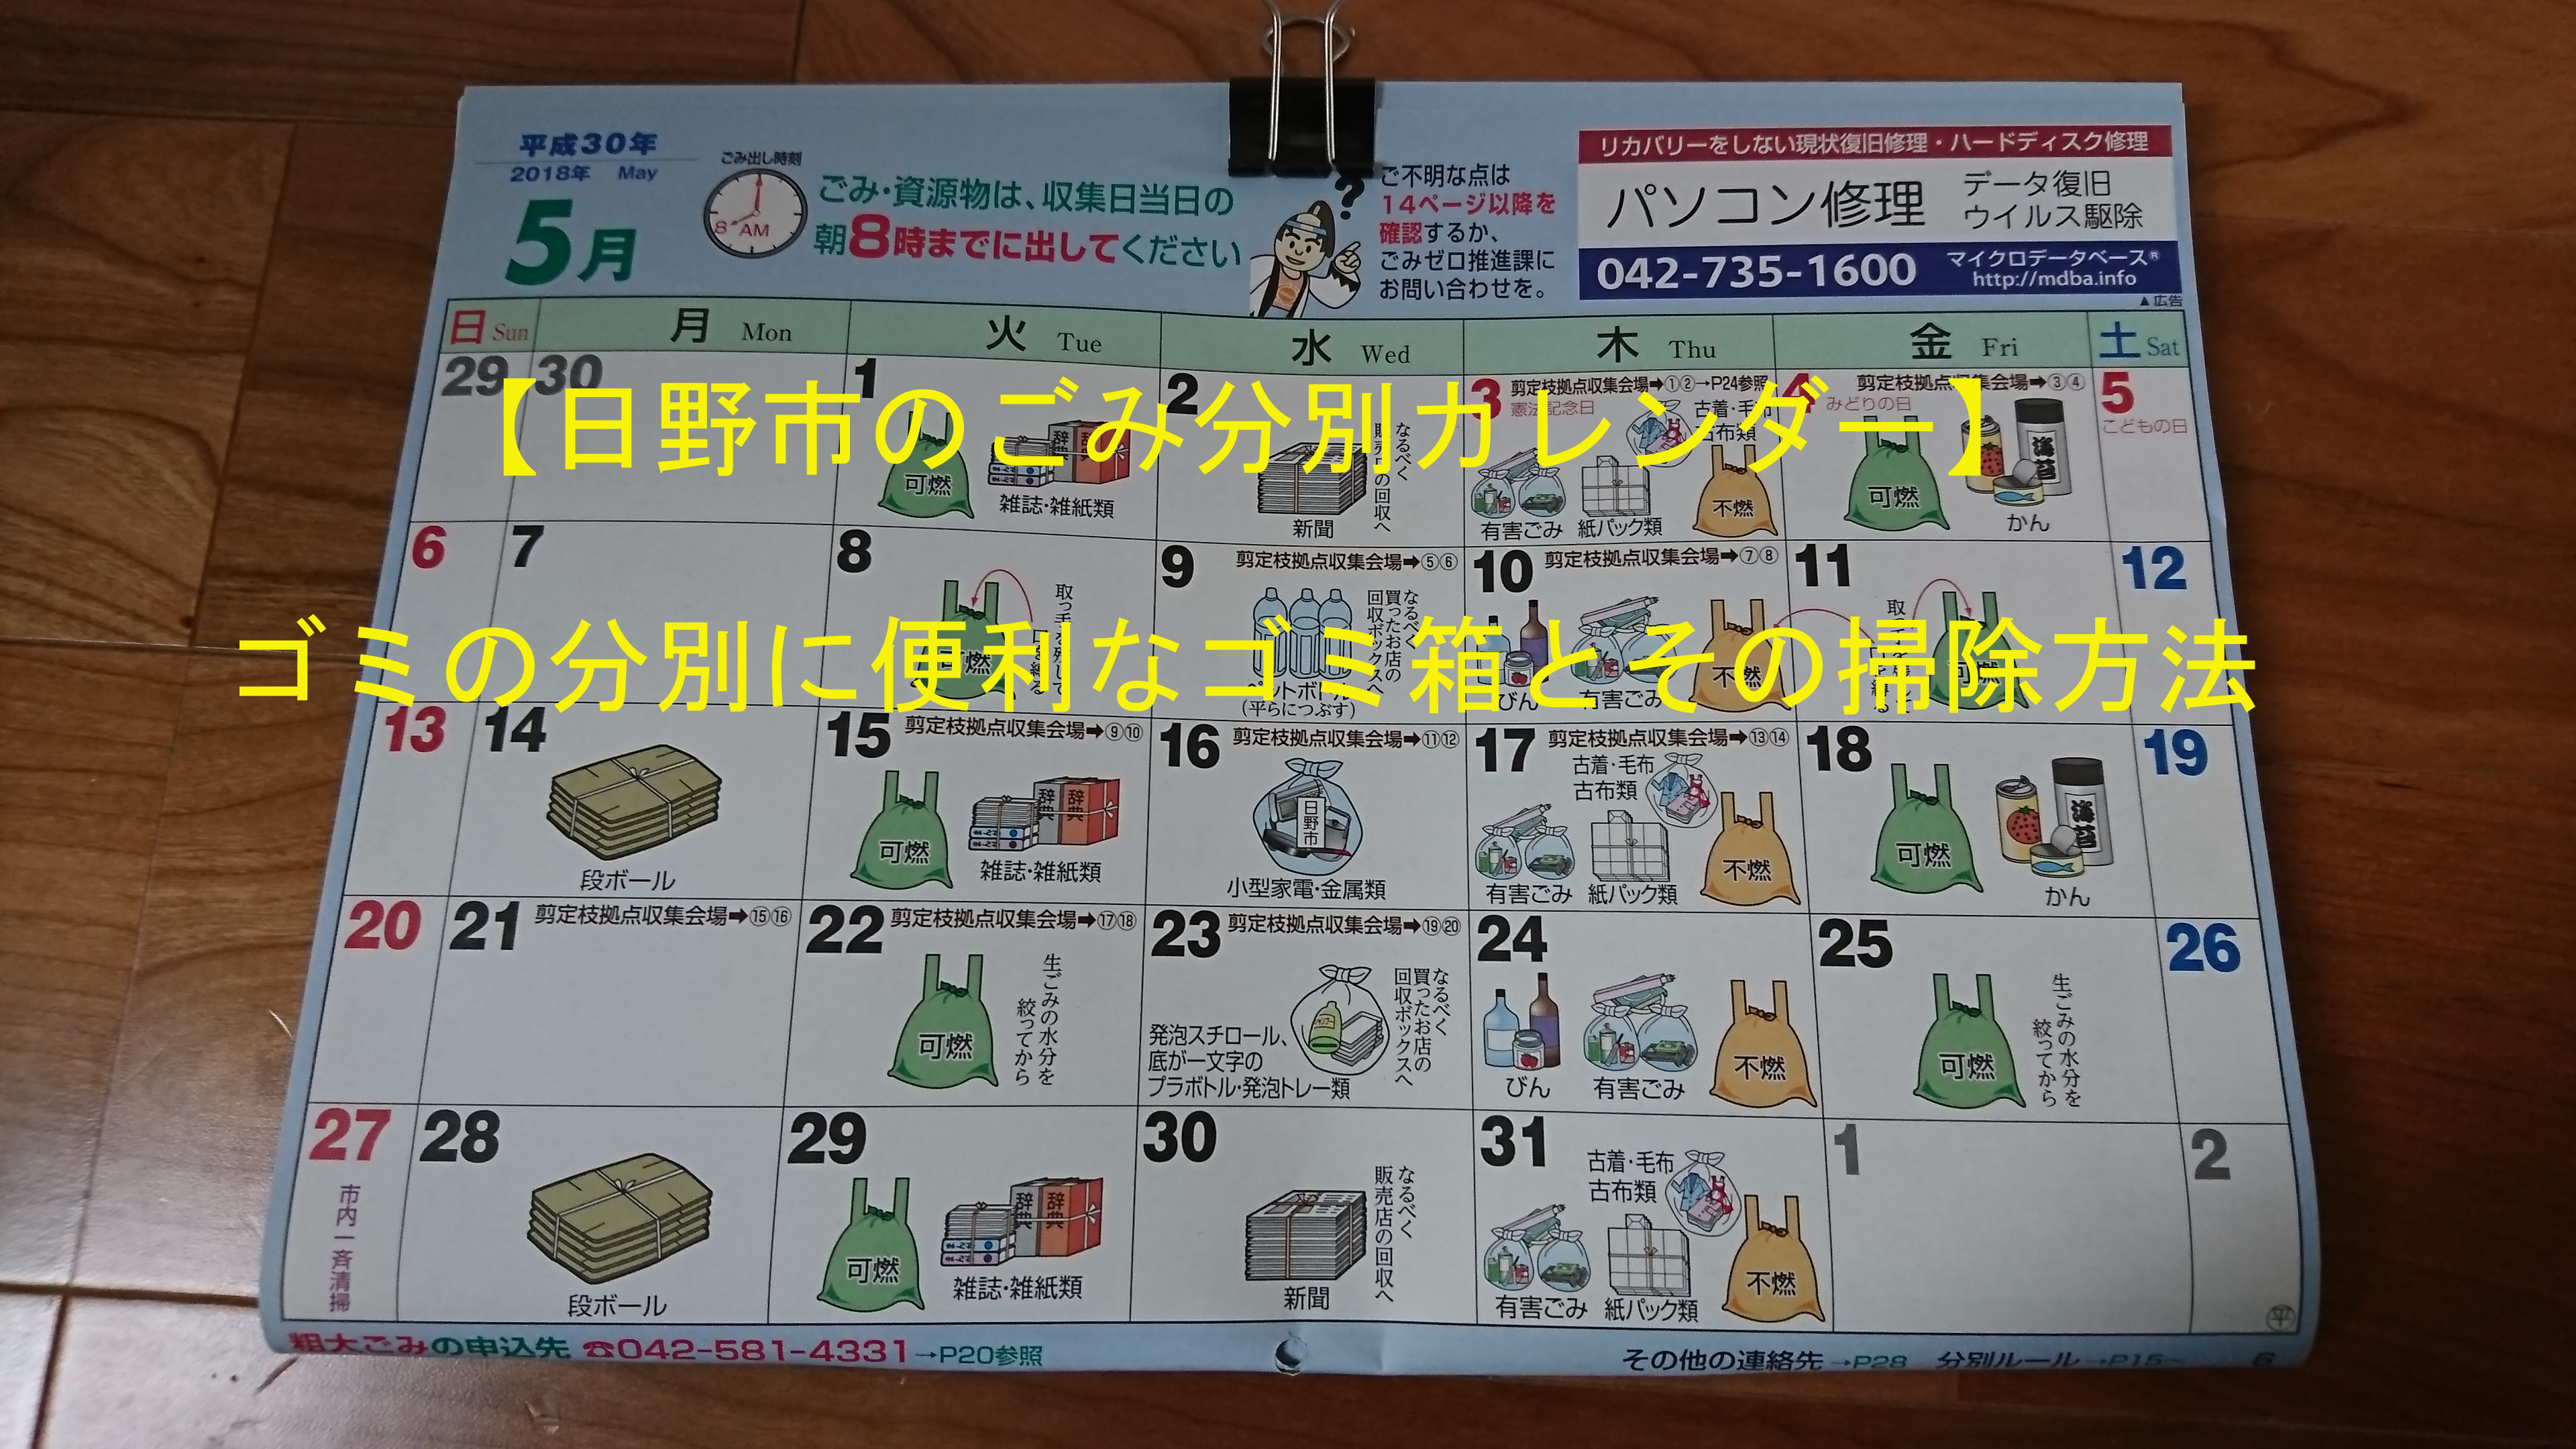 日野市のごみ分別カレンダー ゴミの分別に便利なゴミ箱とその掃除方法 ひろたんの回想録